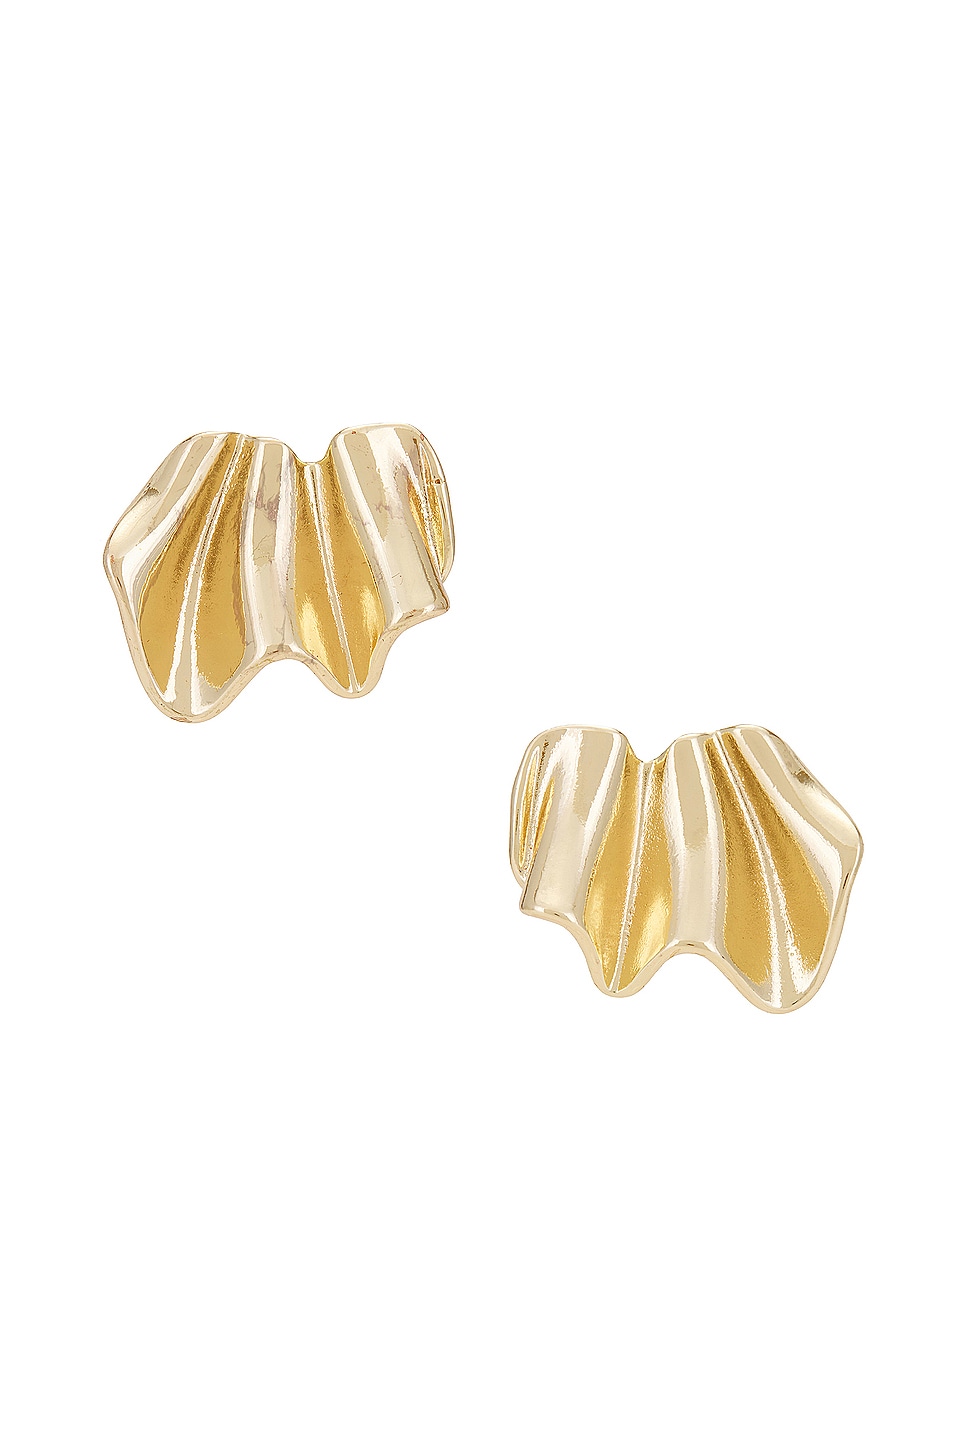 Ayla Earrings in Metallic Gold